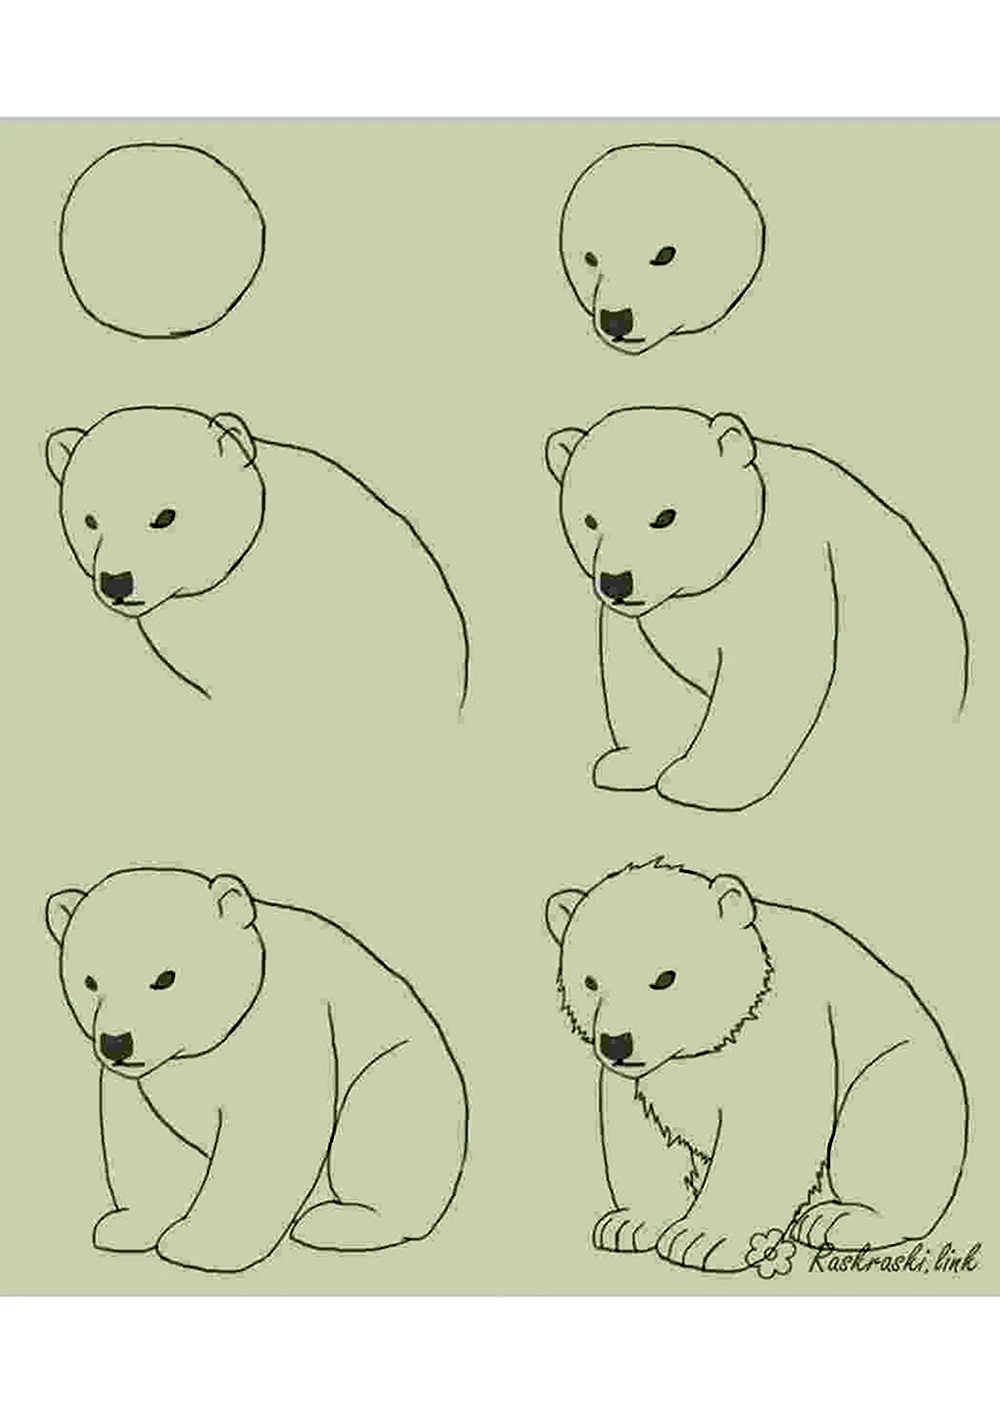 Поэтапное рисование медведя